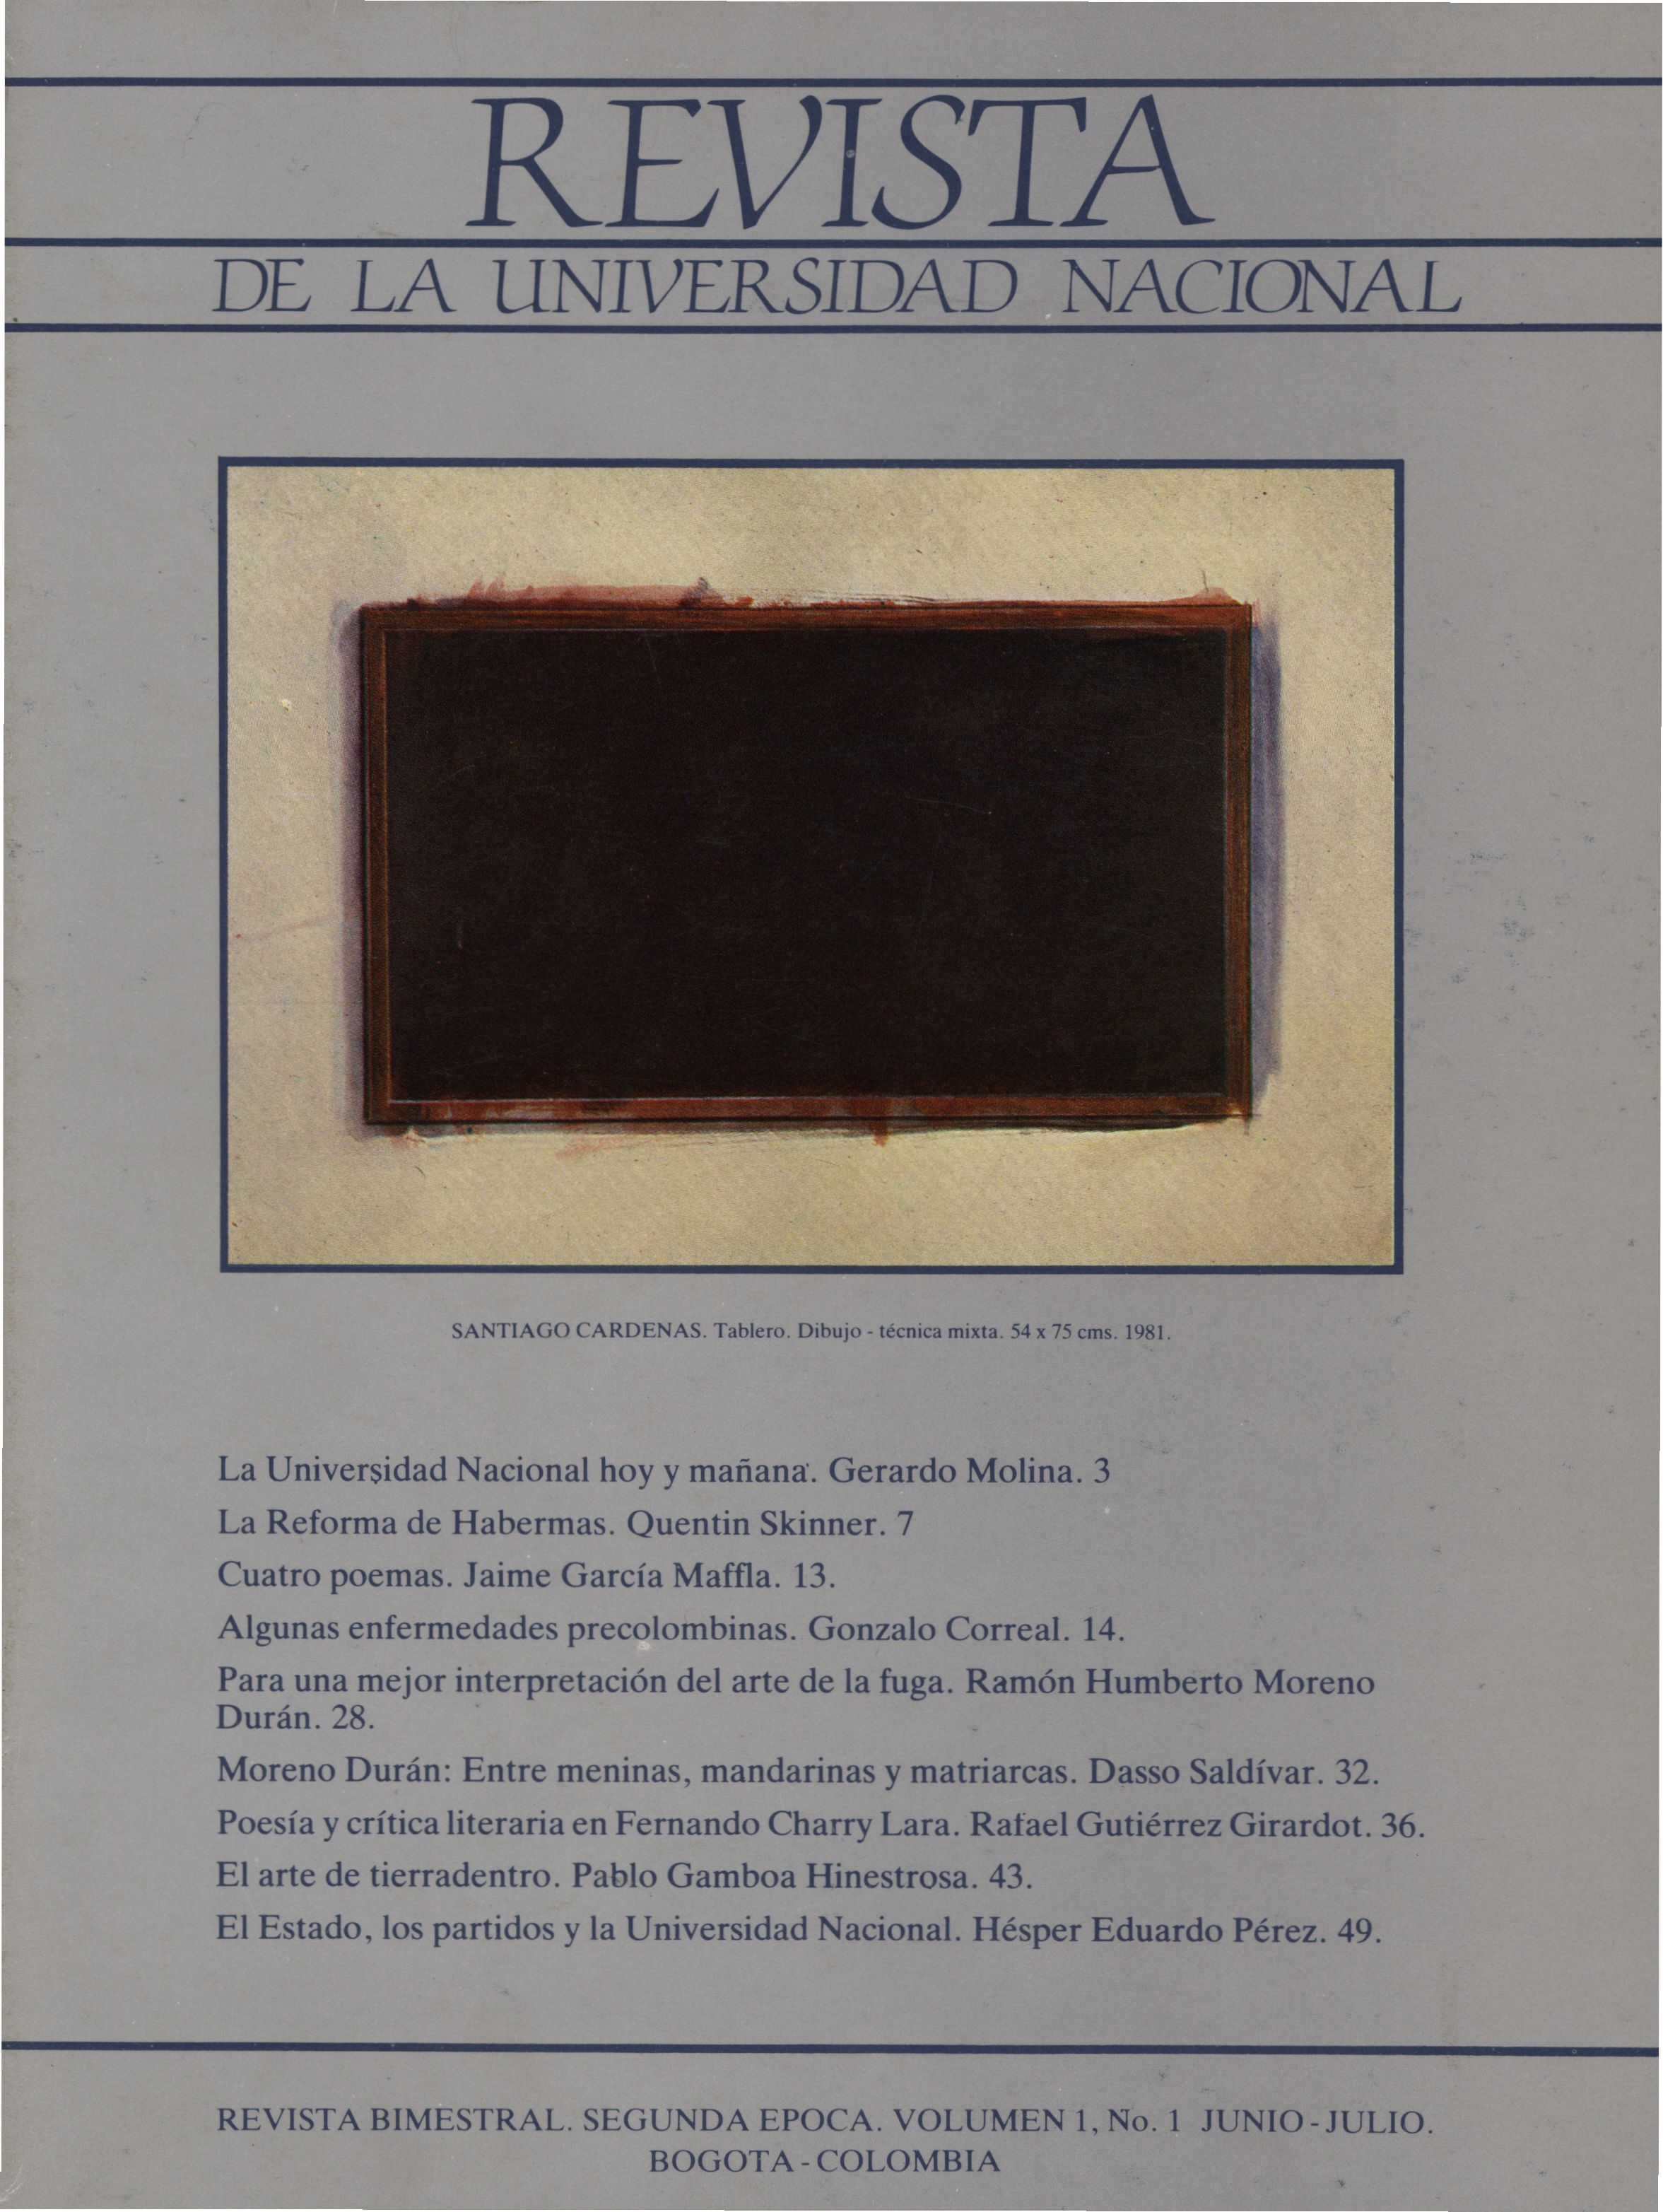 Revista de la Universidad Nacional Vol. 1 No. 1 (Jun-Jul, 1985)